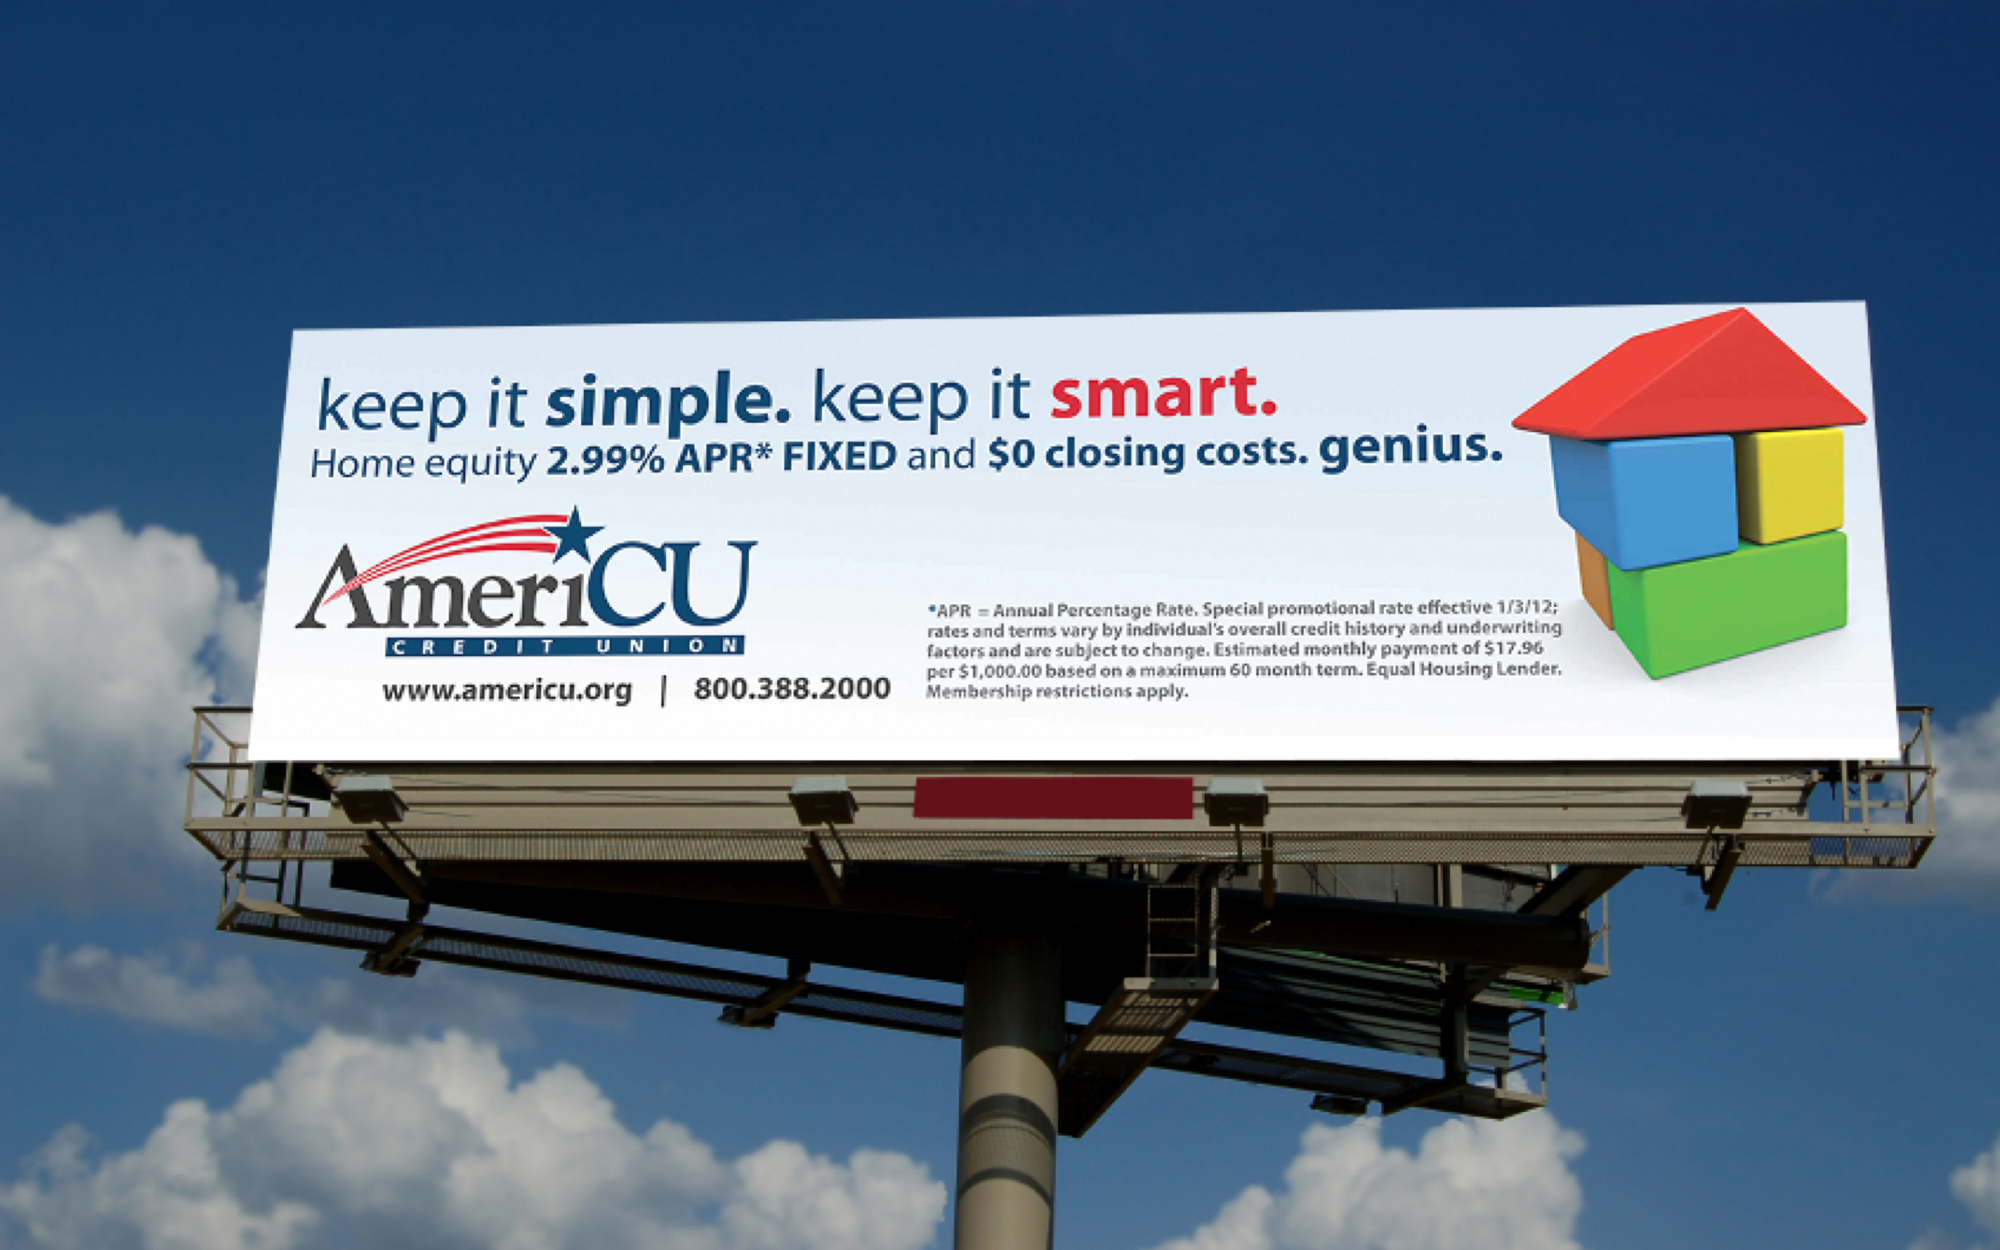 AmeriCU Home Equity Campaign Billboard